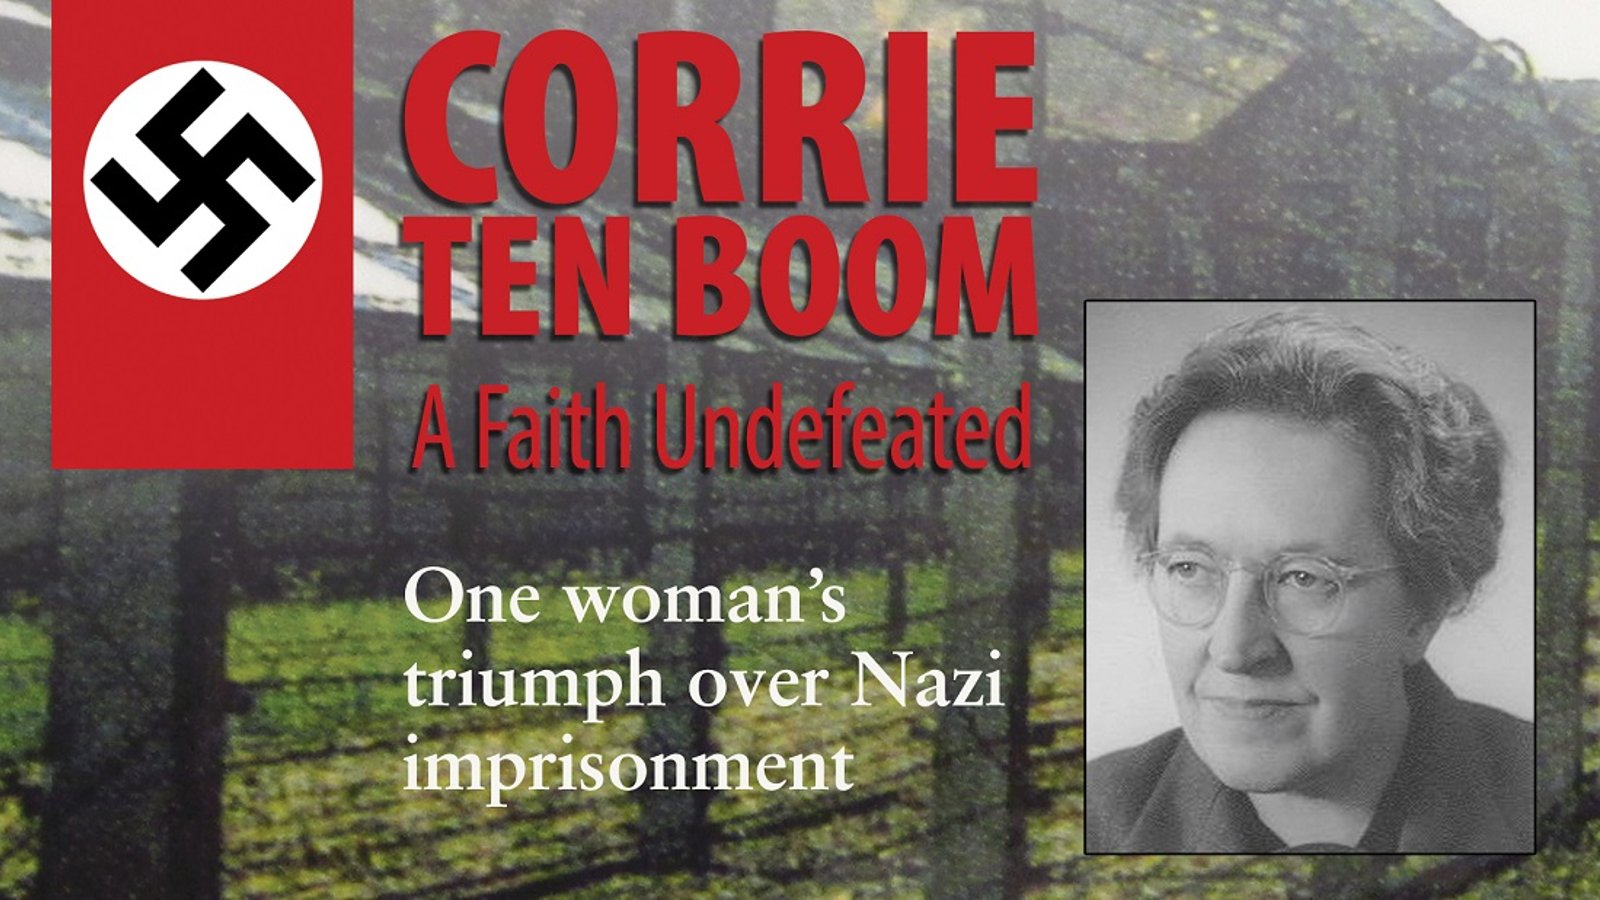 Corrie ten Boom - A Faith Undefeated